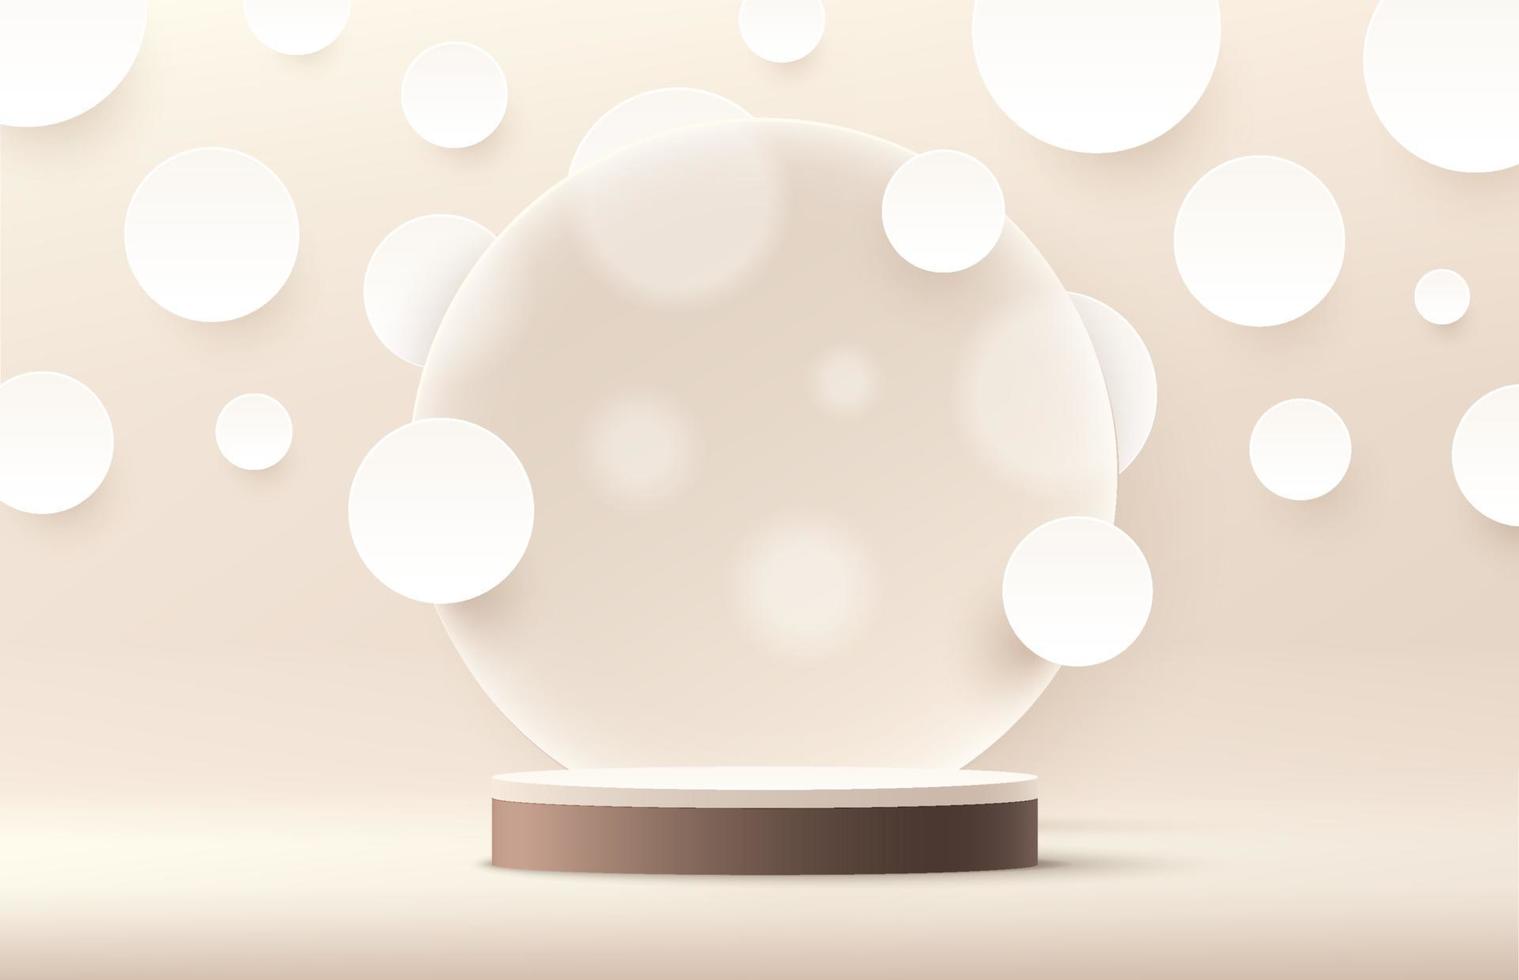 podio moderno con piedistallo cilindrico bianco e marrone. sfondo di colore beige cerchio e pois bianchi in stile carta tagliata. rendering vettoriale forma 3d per la presentazione del display dei prodotti. scena minimale astratta